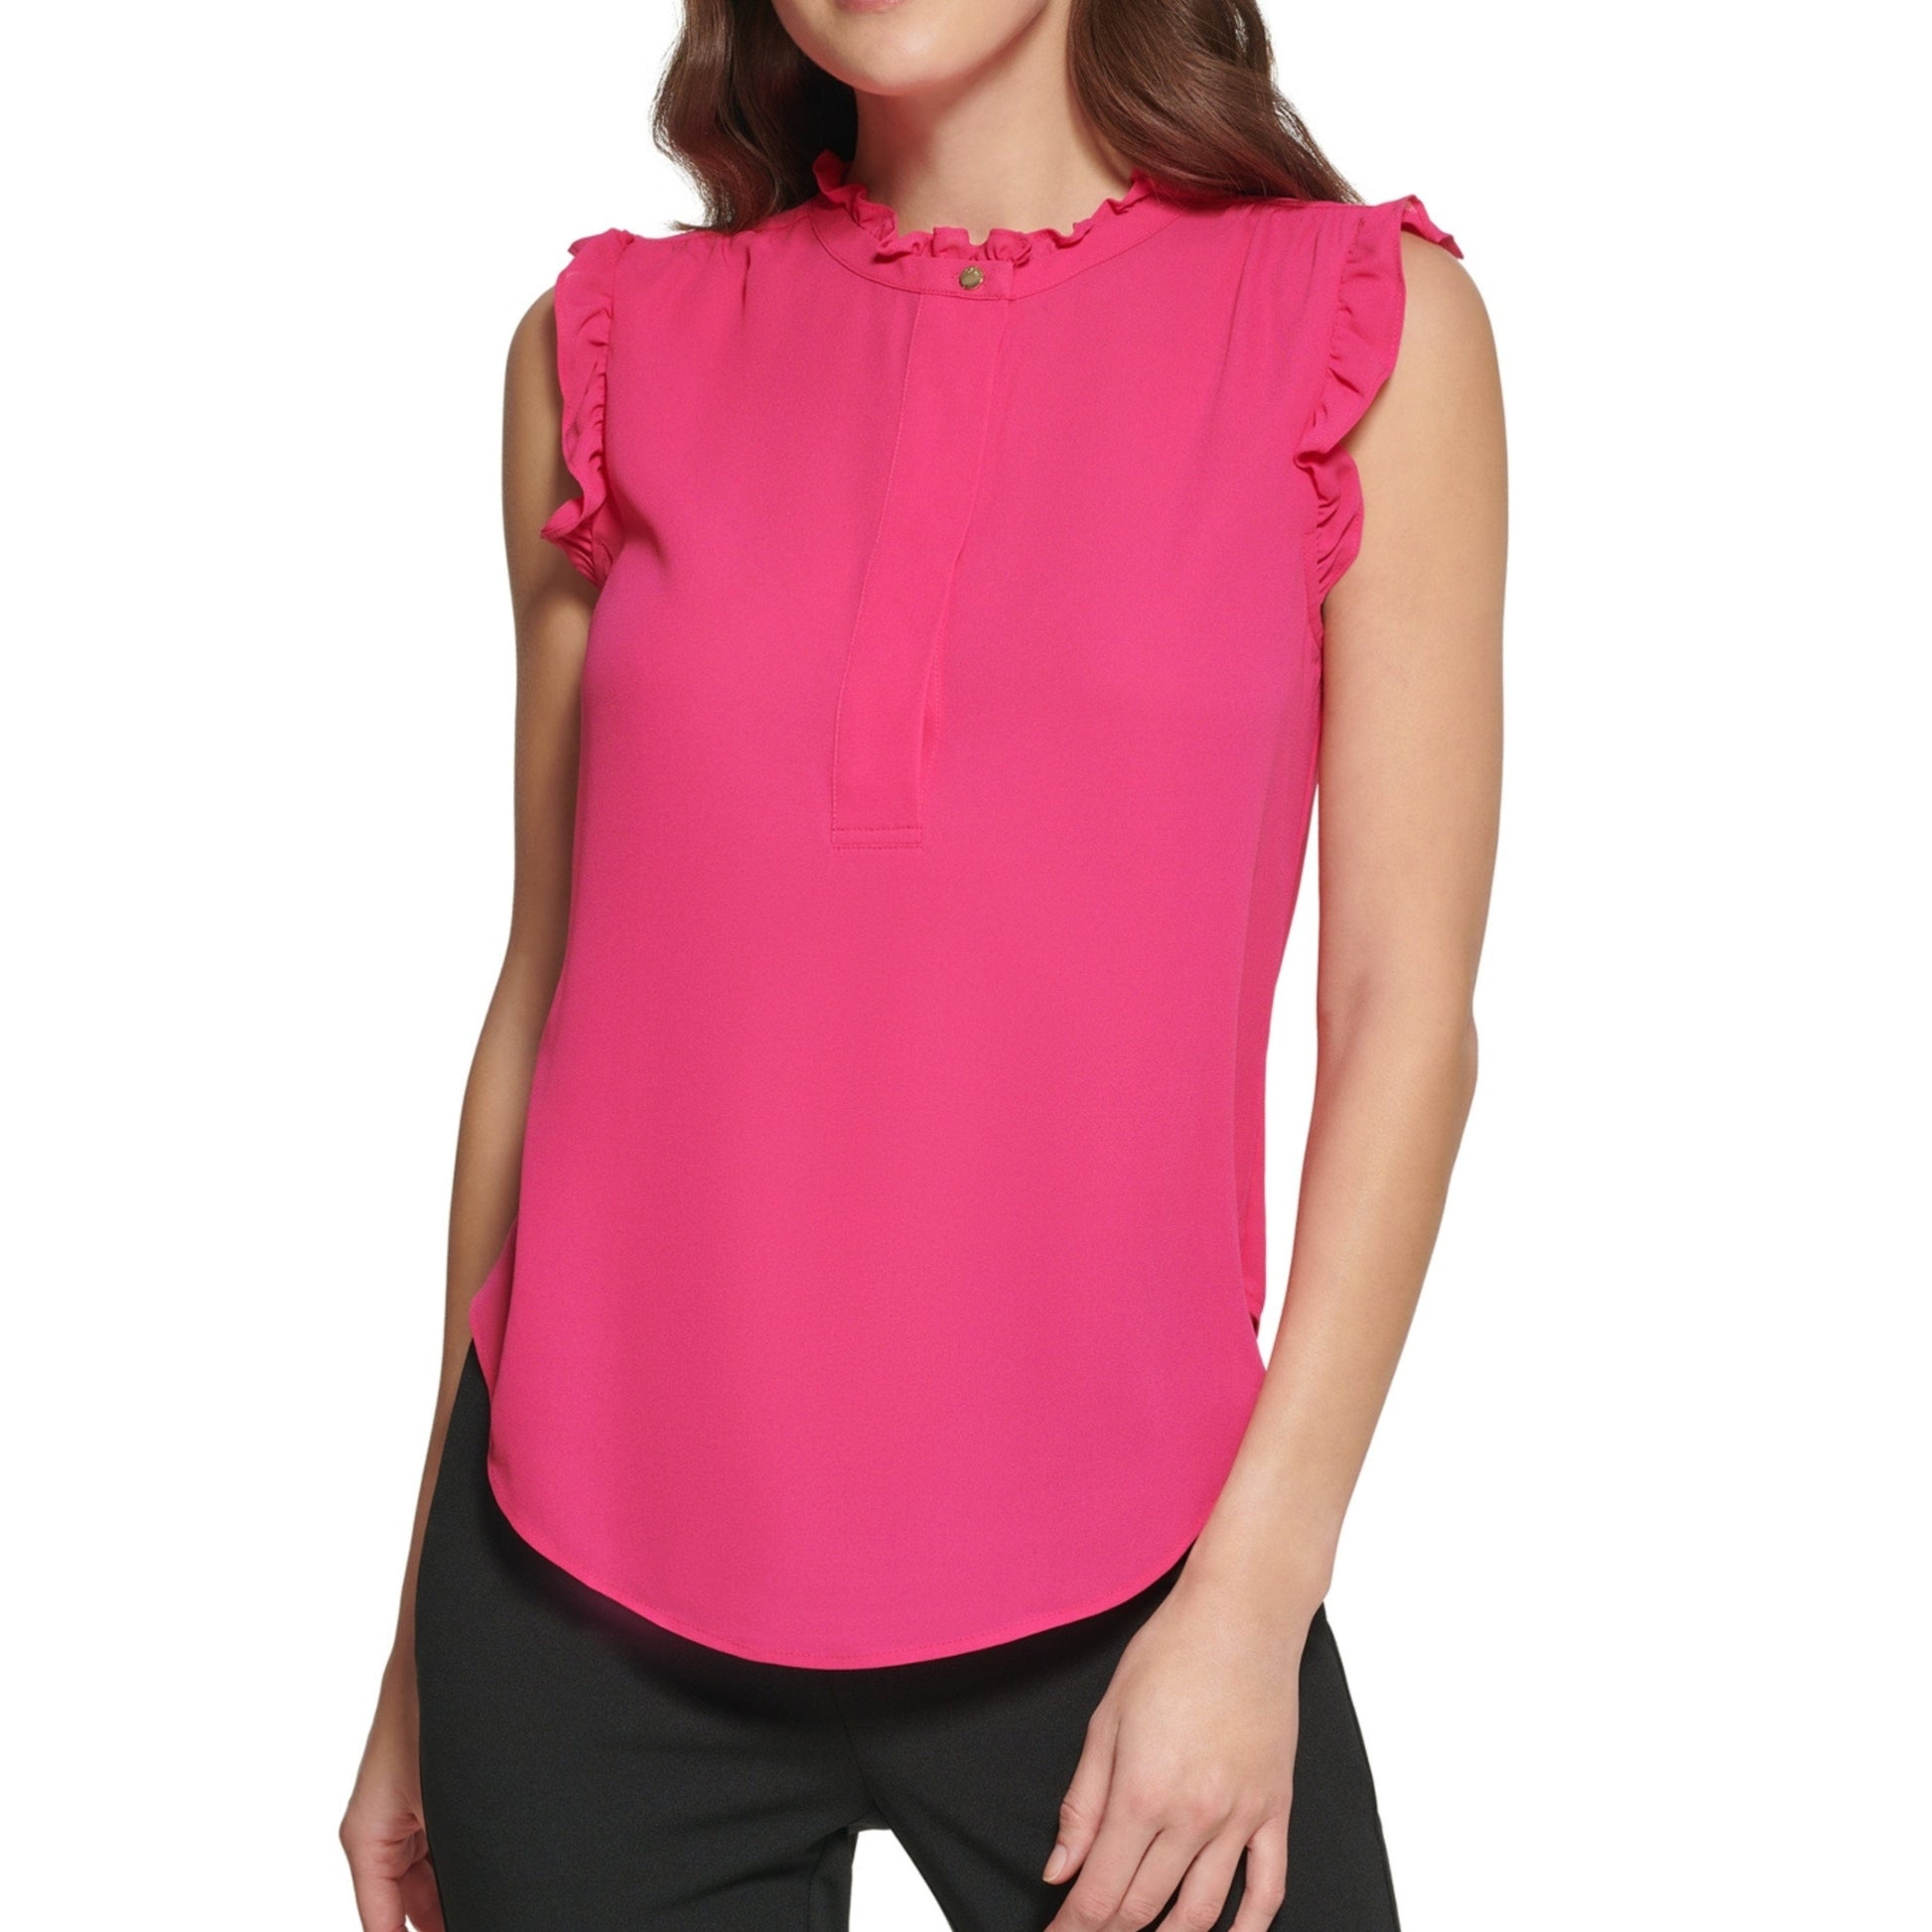 DKNY Womens Tops Petite XS / Pink DKNY - Sleeveless Ruffled Blouse